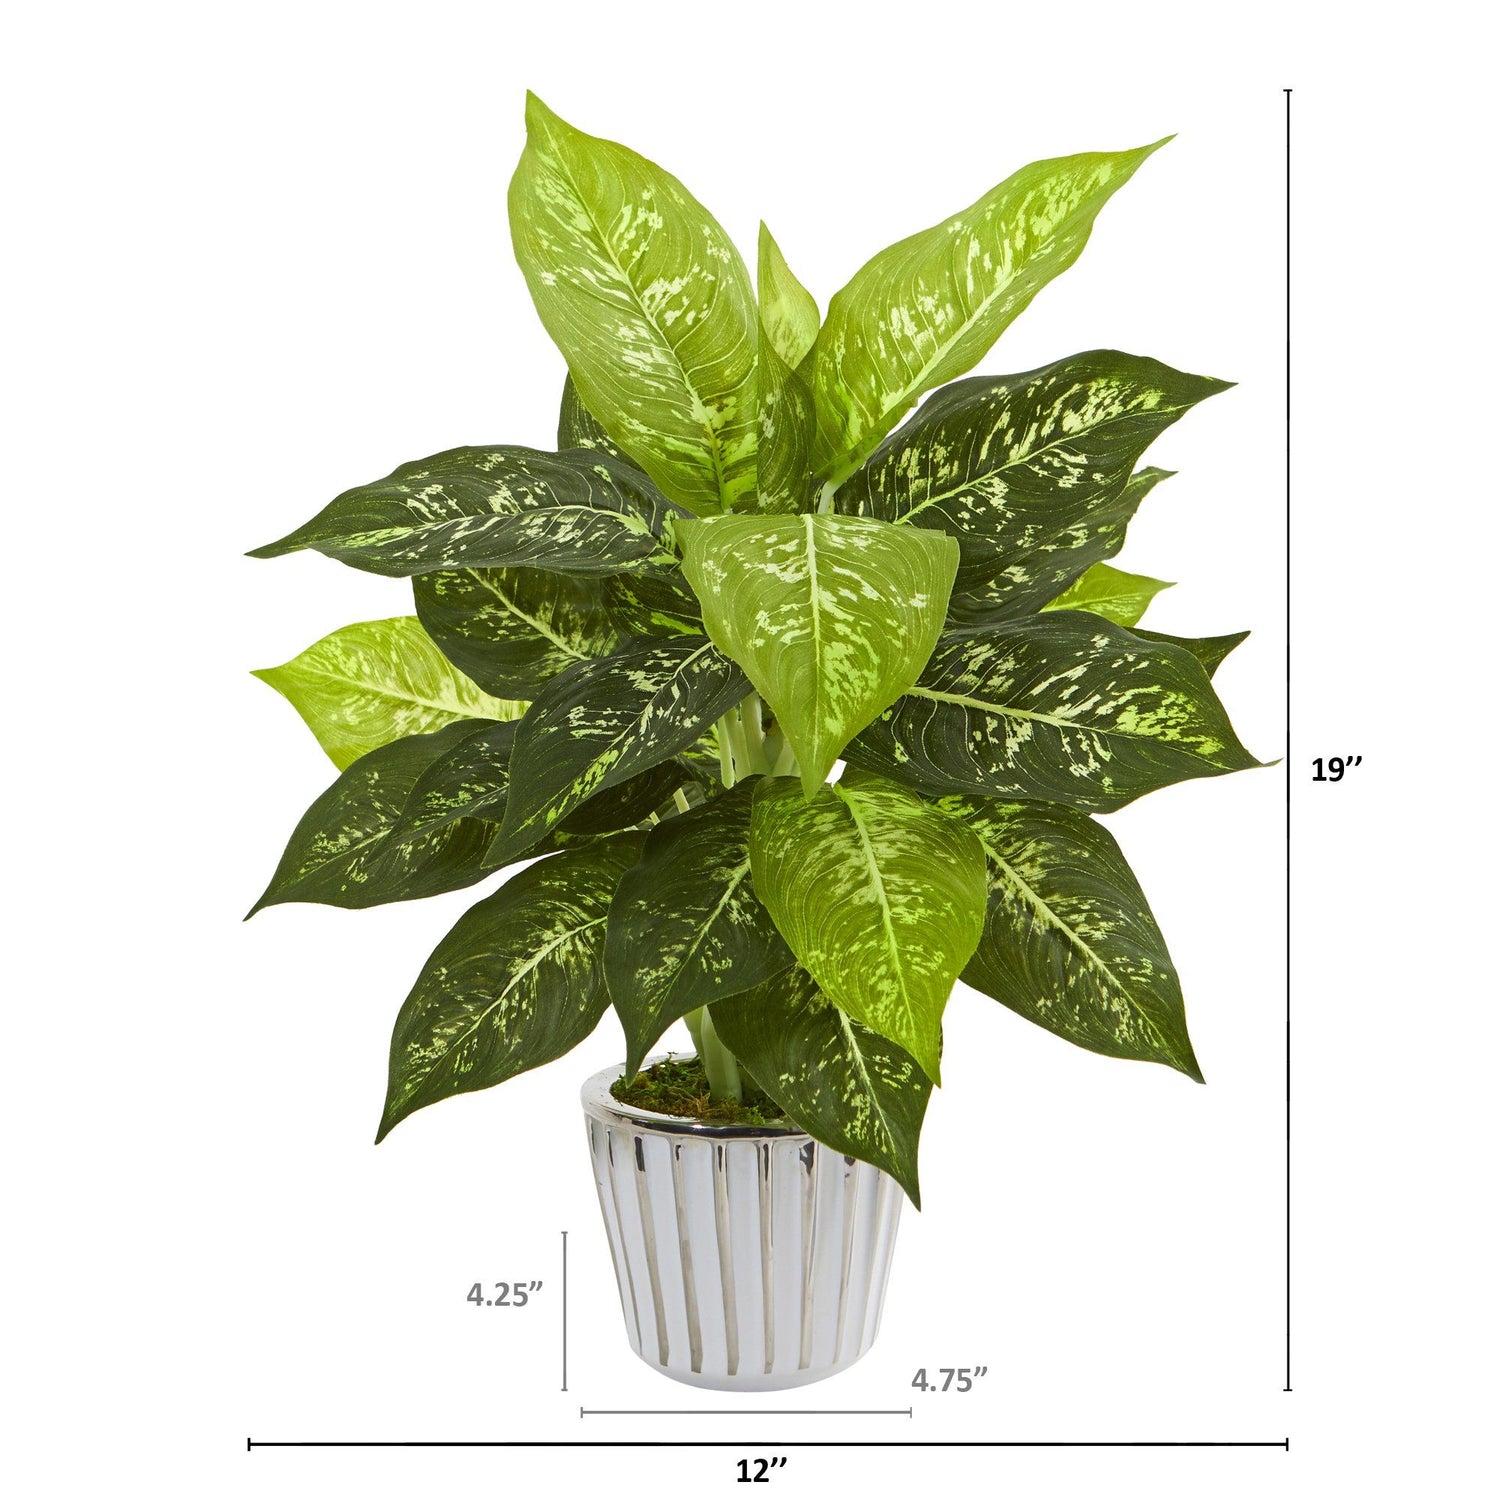 19” Dieffenbachia Artificial Plant in White Vase (Set of 2)